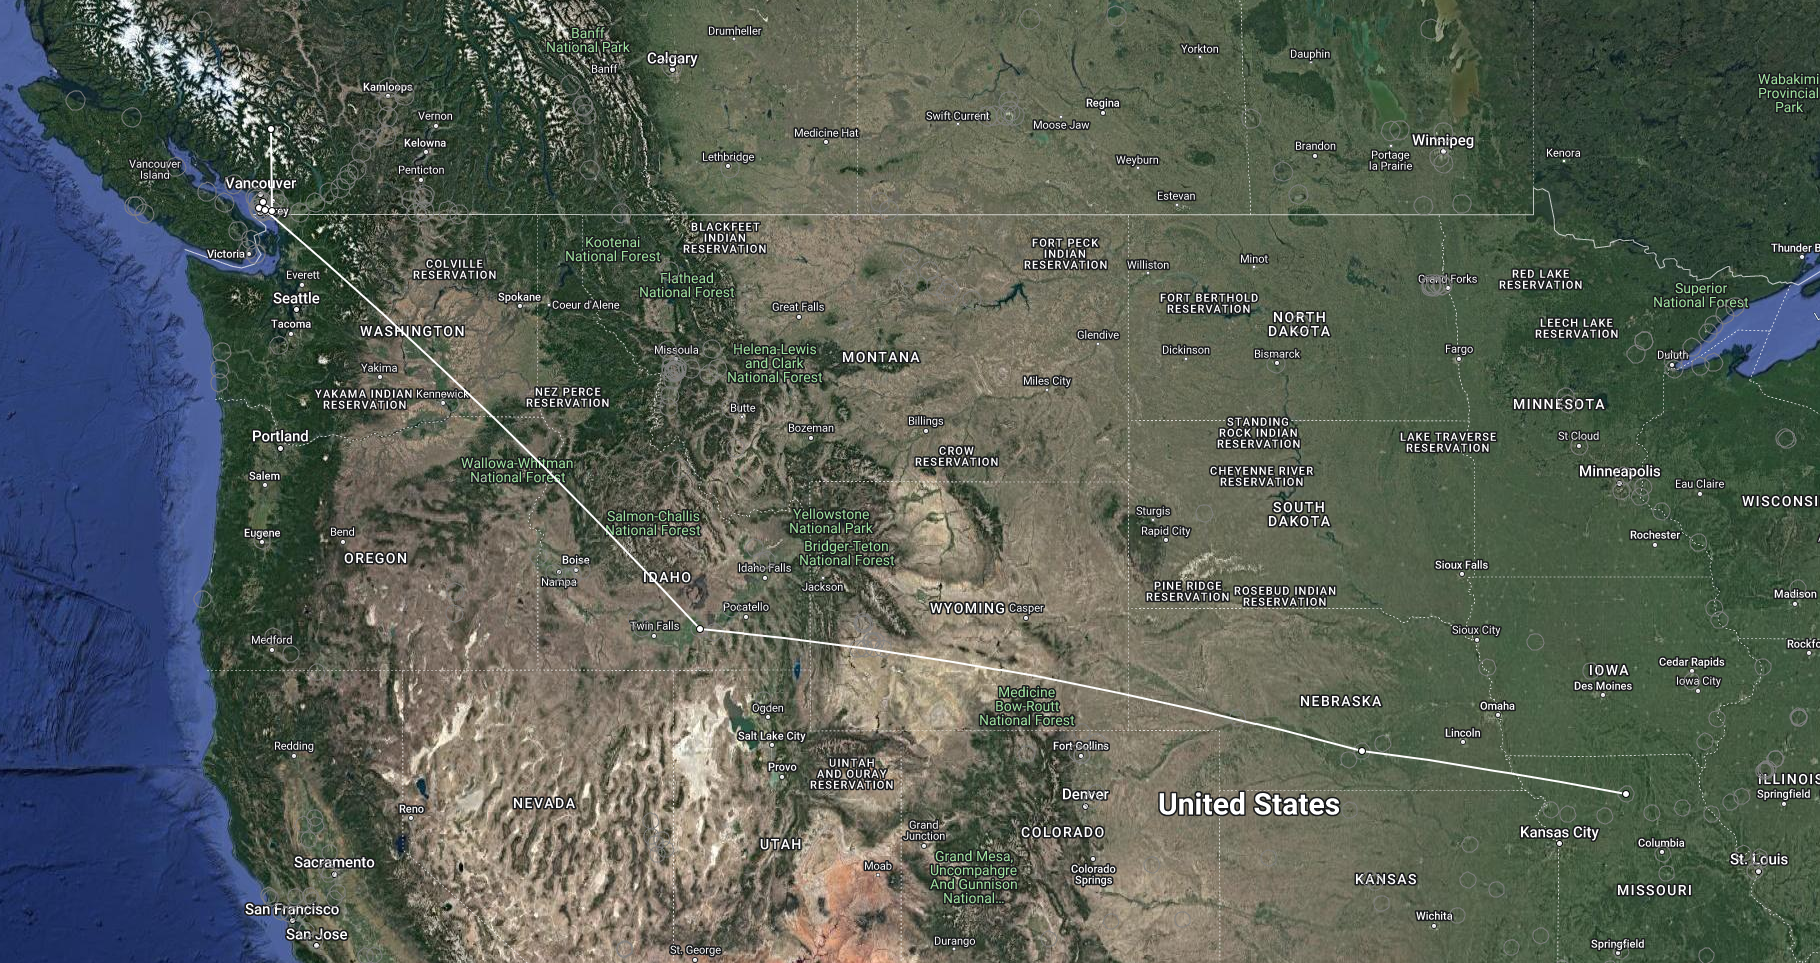 Migratory route of Swainson's Thrush "B" from British Columbia to Missouri